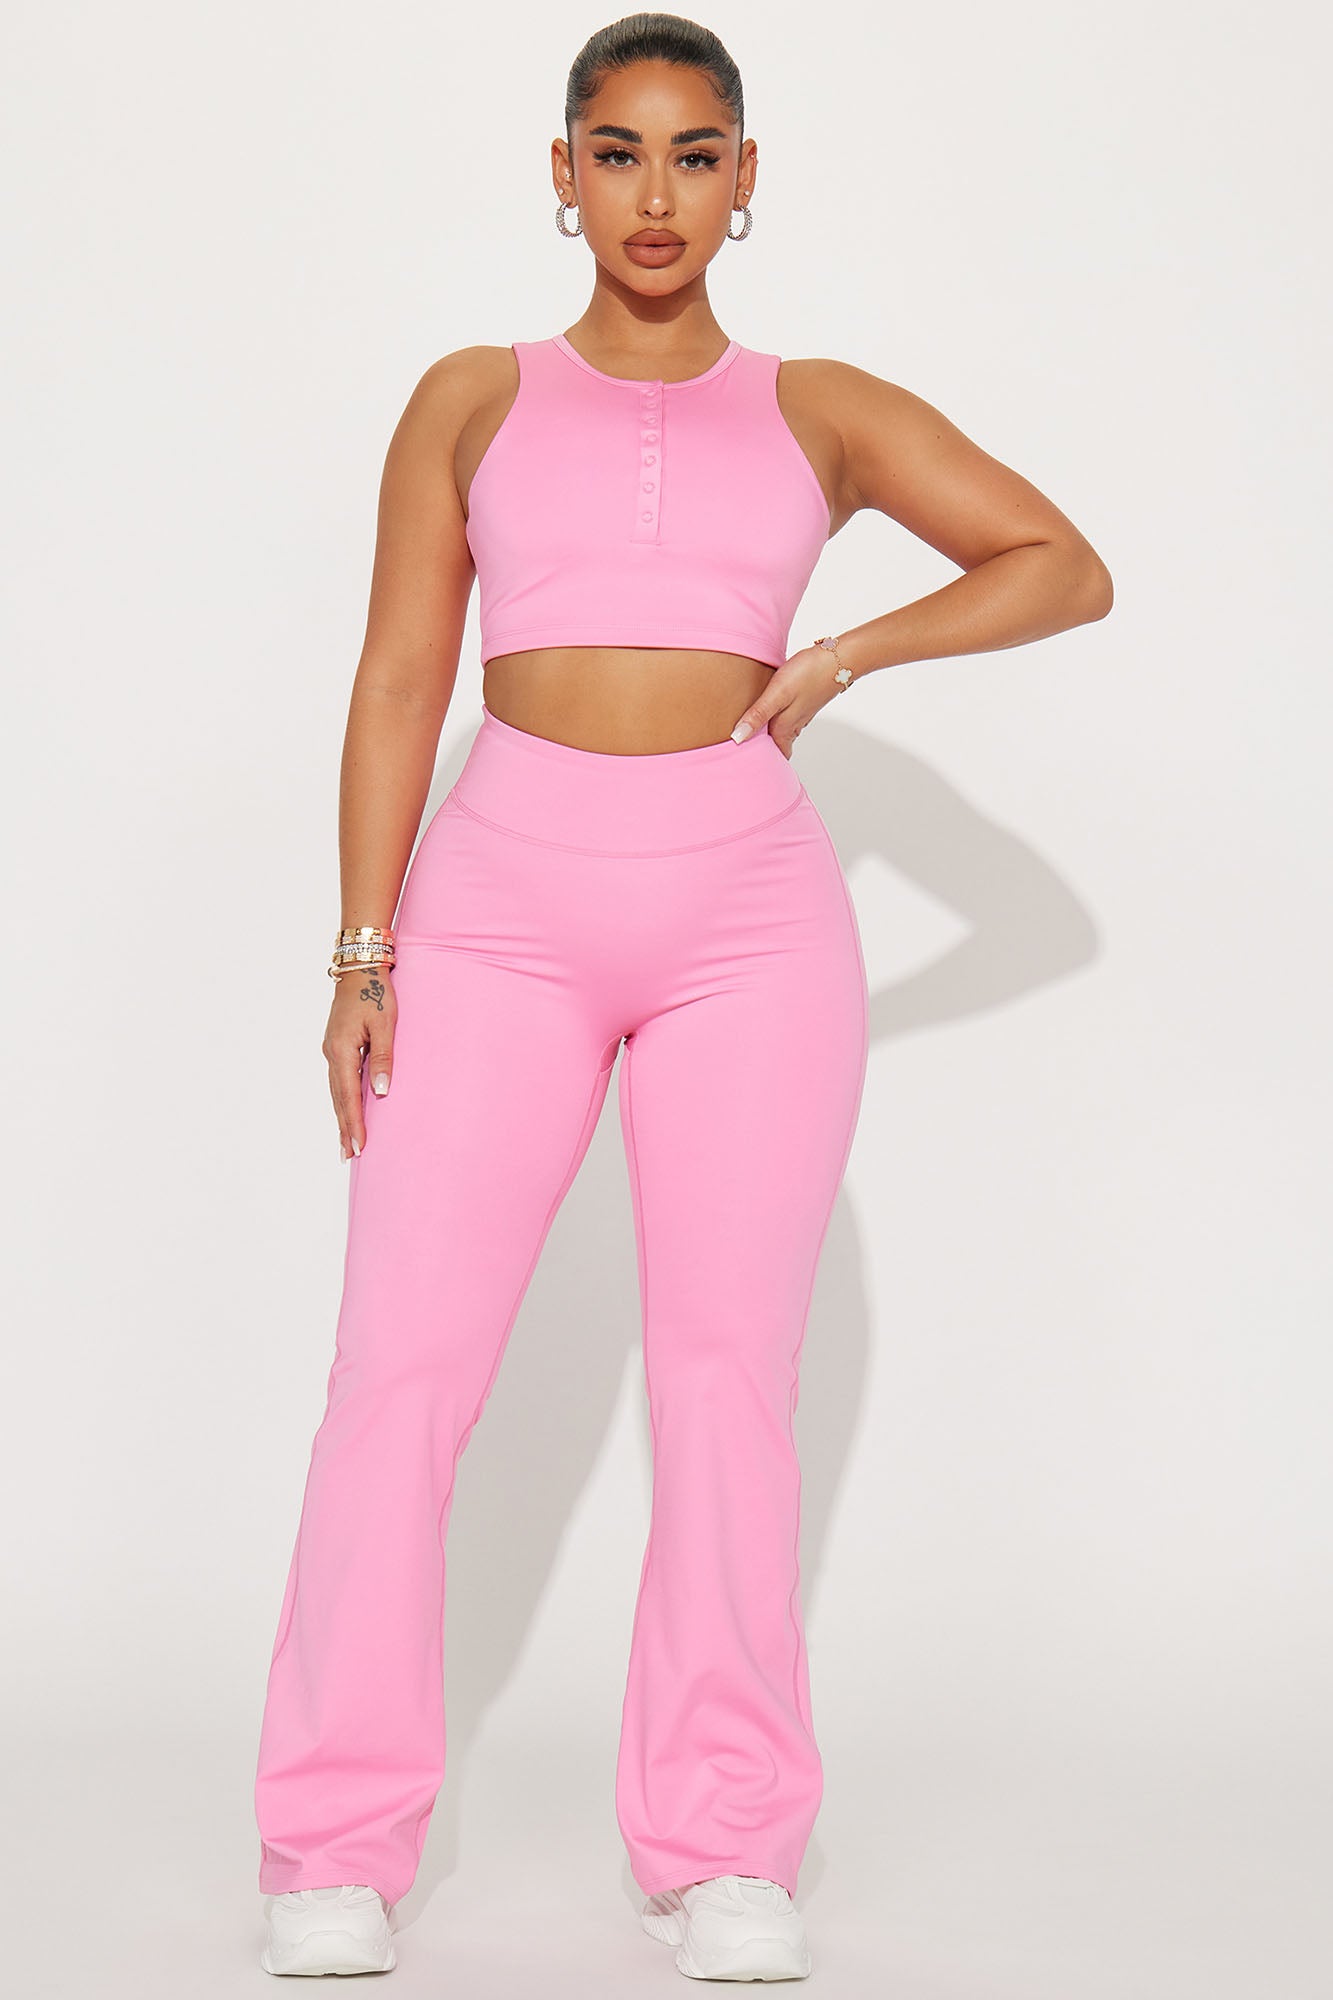 Donna Light Pink Yoga Pant, XS-XL